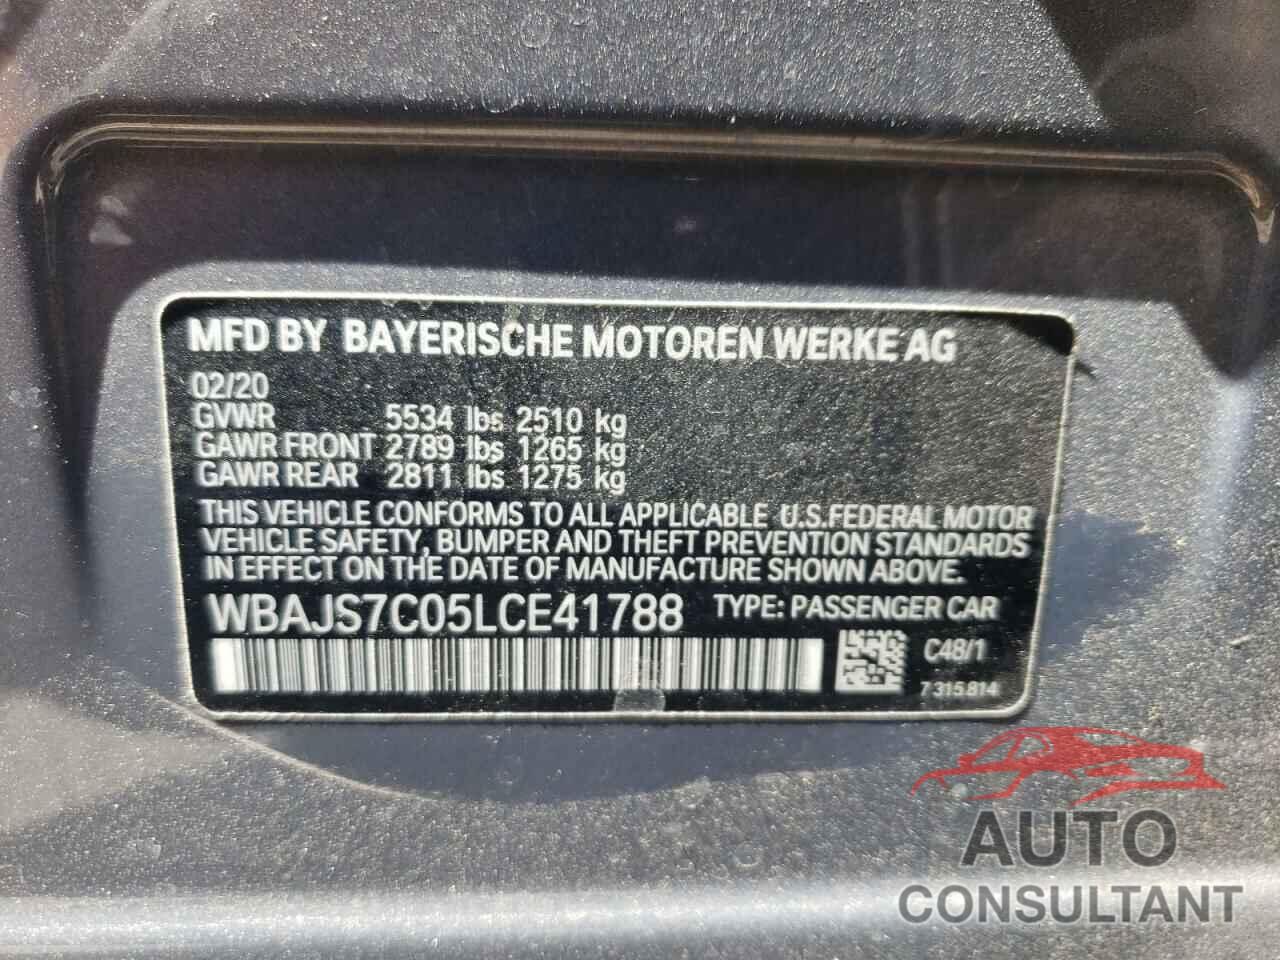 BMW M5 2020 - WBAJS7C05LCE41788